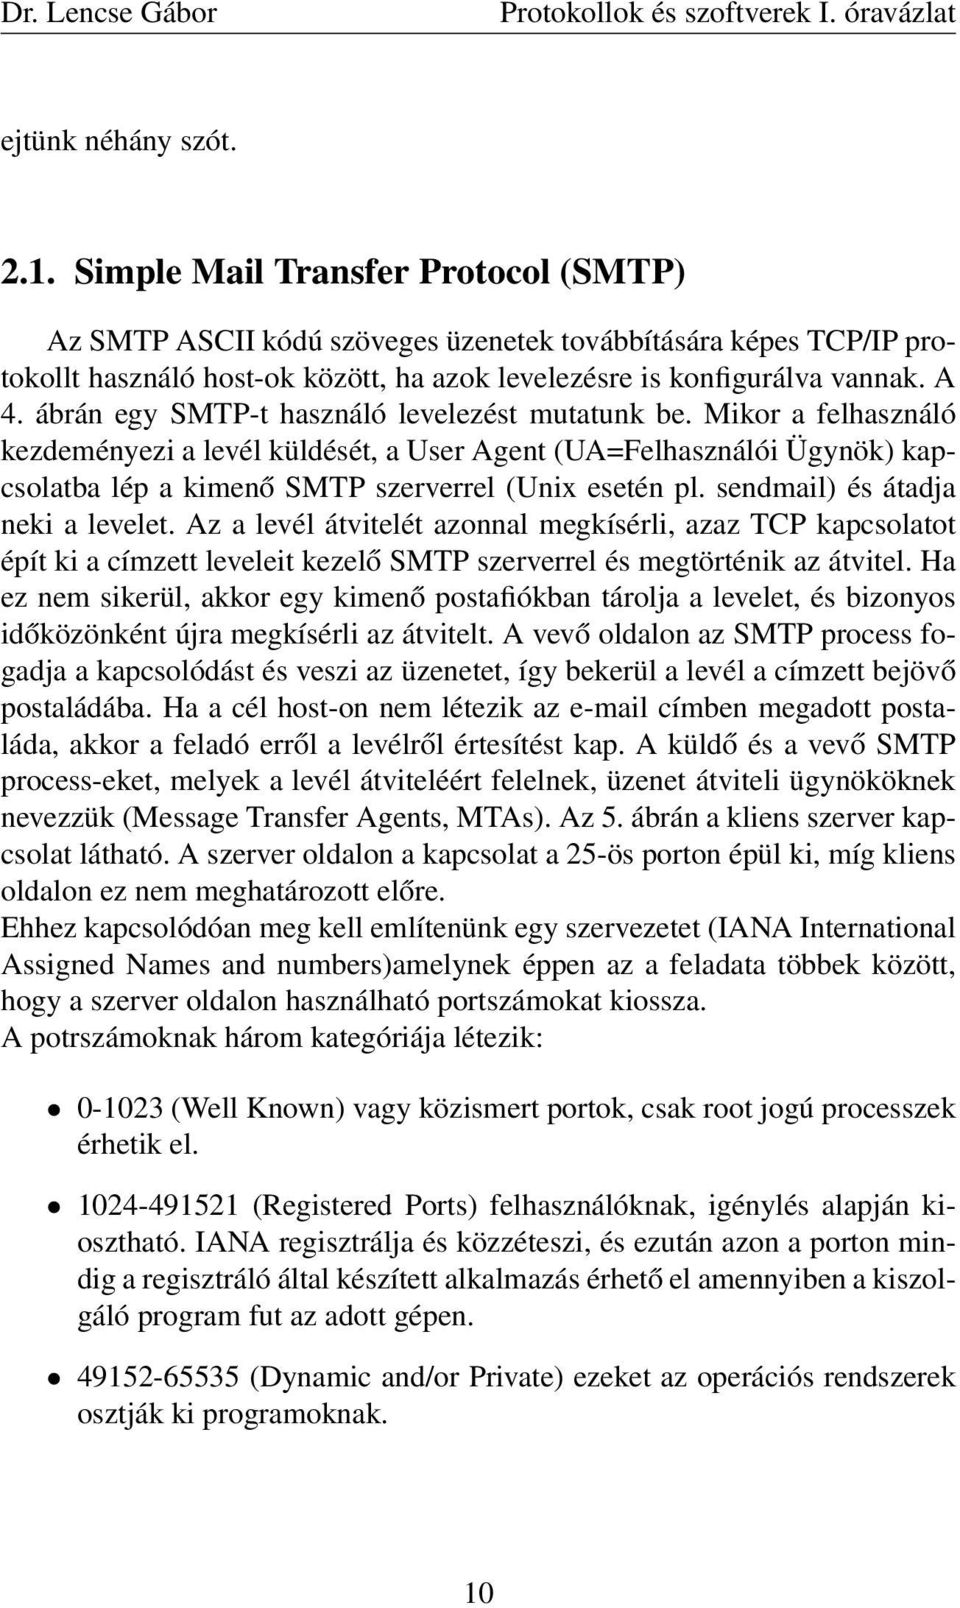 ábrán egy SMTP-t használó levelezést mutatunk be. Mikor a felhasználó kezdeményezi a levél küldését, a User Agent (UA=Felhasználói Ügynök) kapcsolatba lép a kimenő SMTP szerverrel (Unix esetén pl.